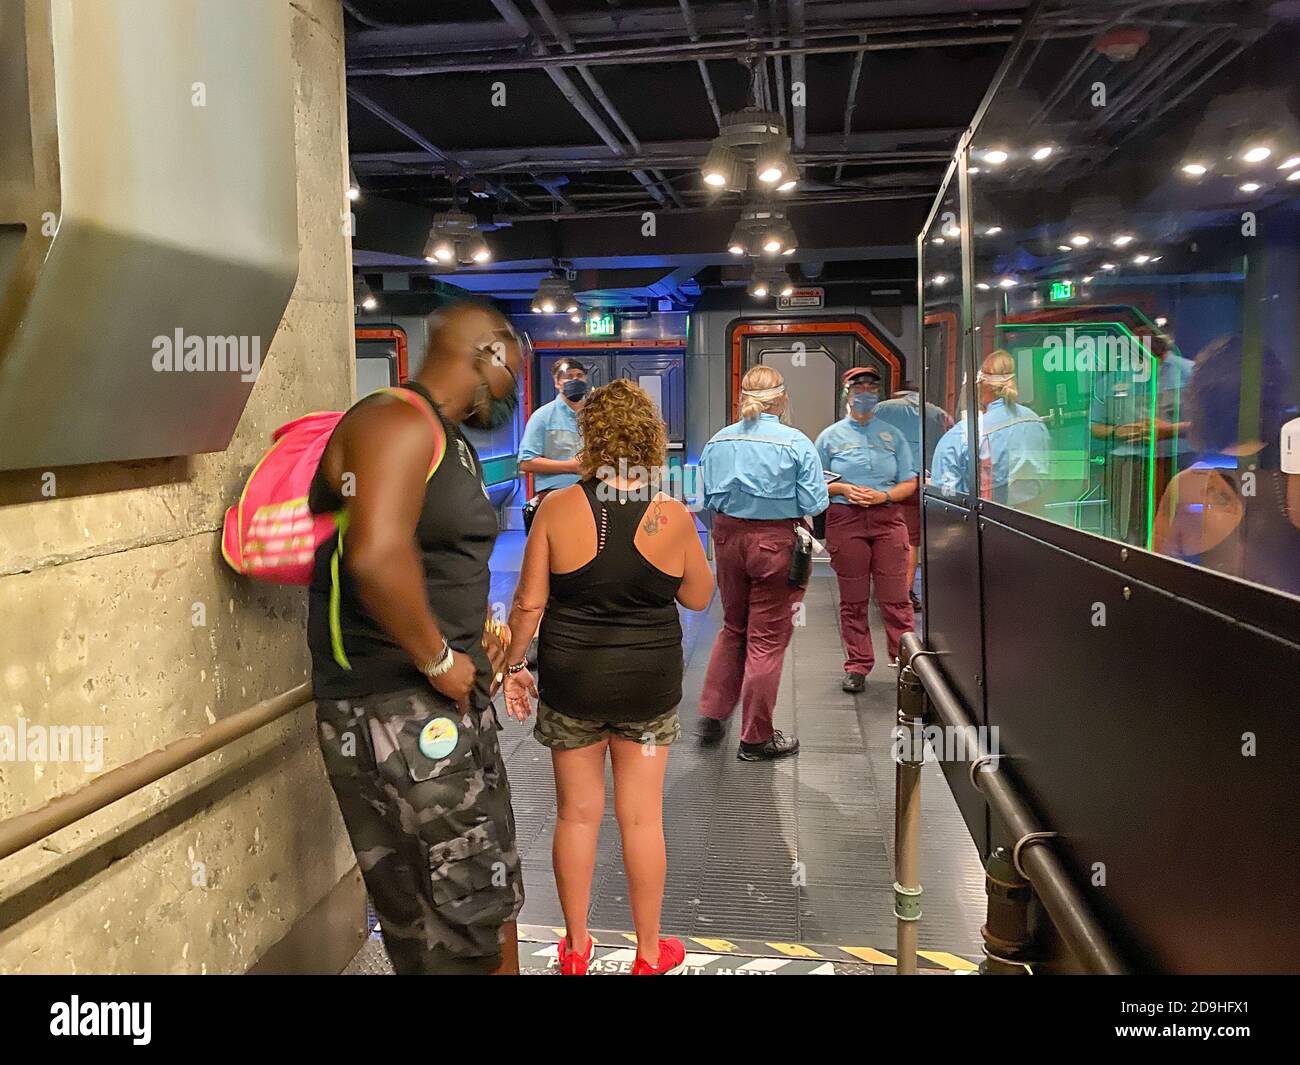 Orlando,FL/USA-7/18/20: Les gens qui attendent en file d'attente au vol de passage se trouvent dans la zone Pandora de Animal Kingdom à Disney World. Banque D'Images